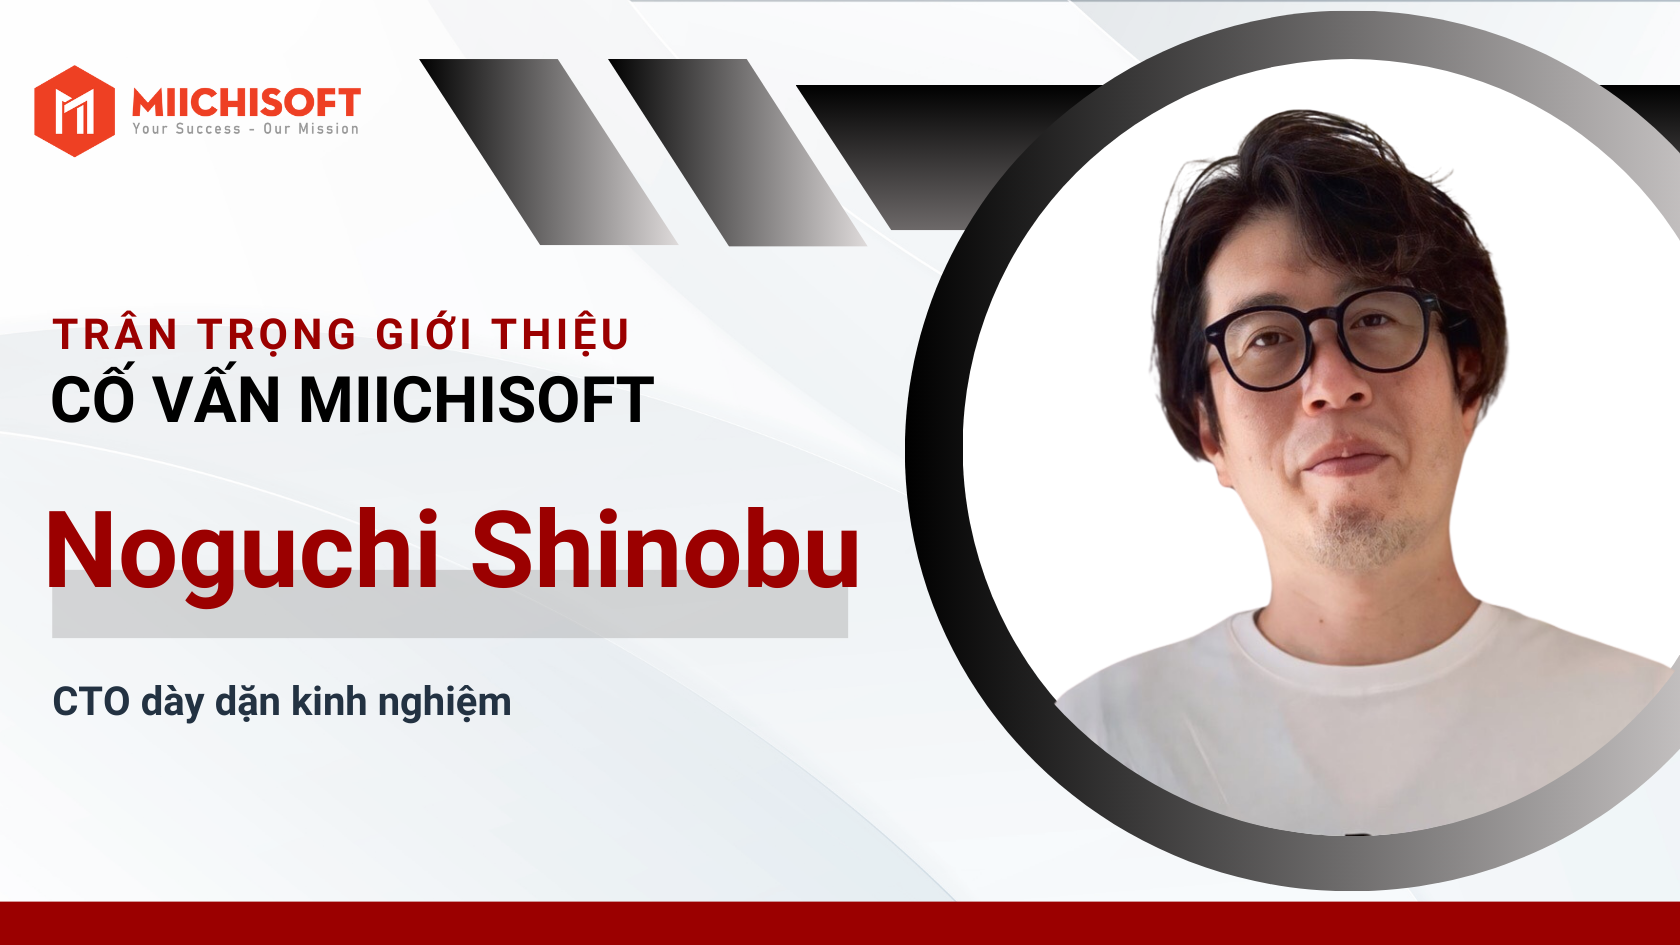 Giới thiệu cố vấn | Thông báo bổ nhiệm ông Noguchi Shinobu làm cố vấn công nghệ của Miichisoft